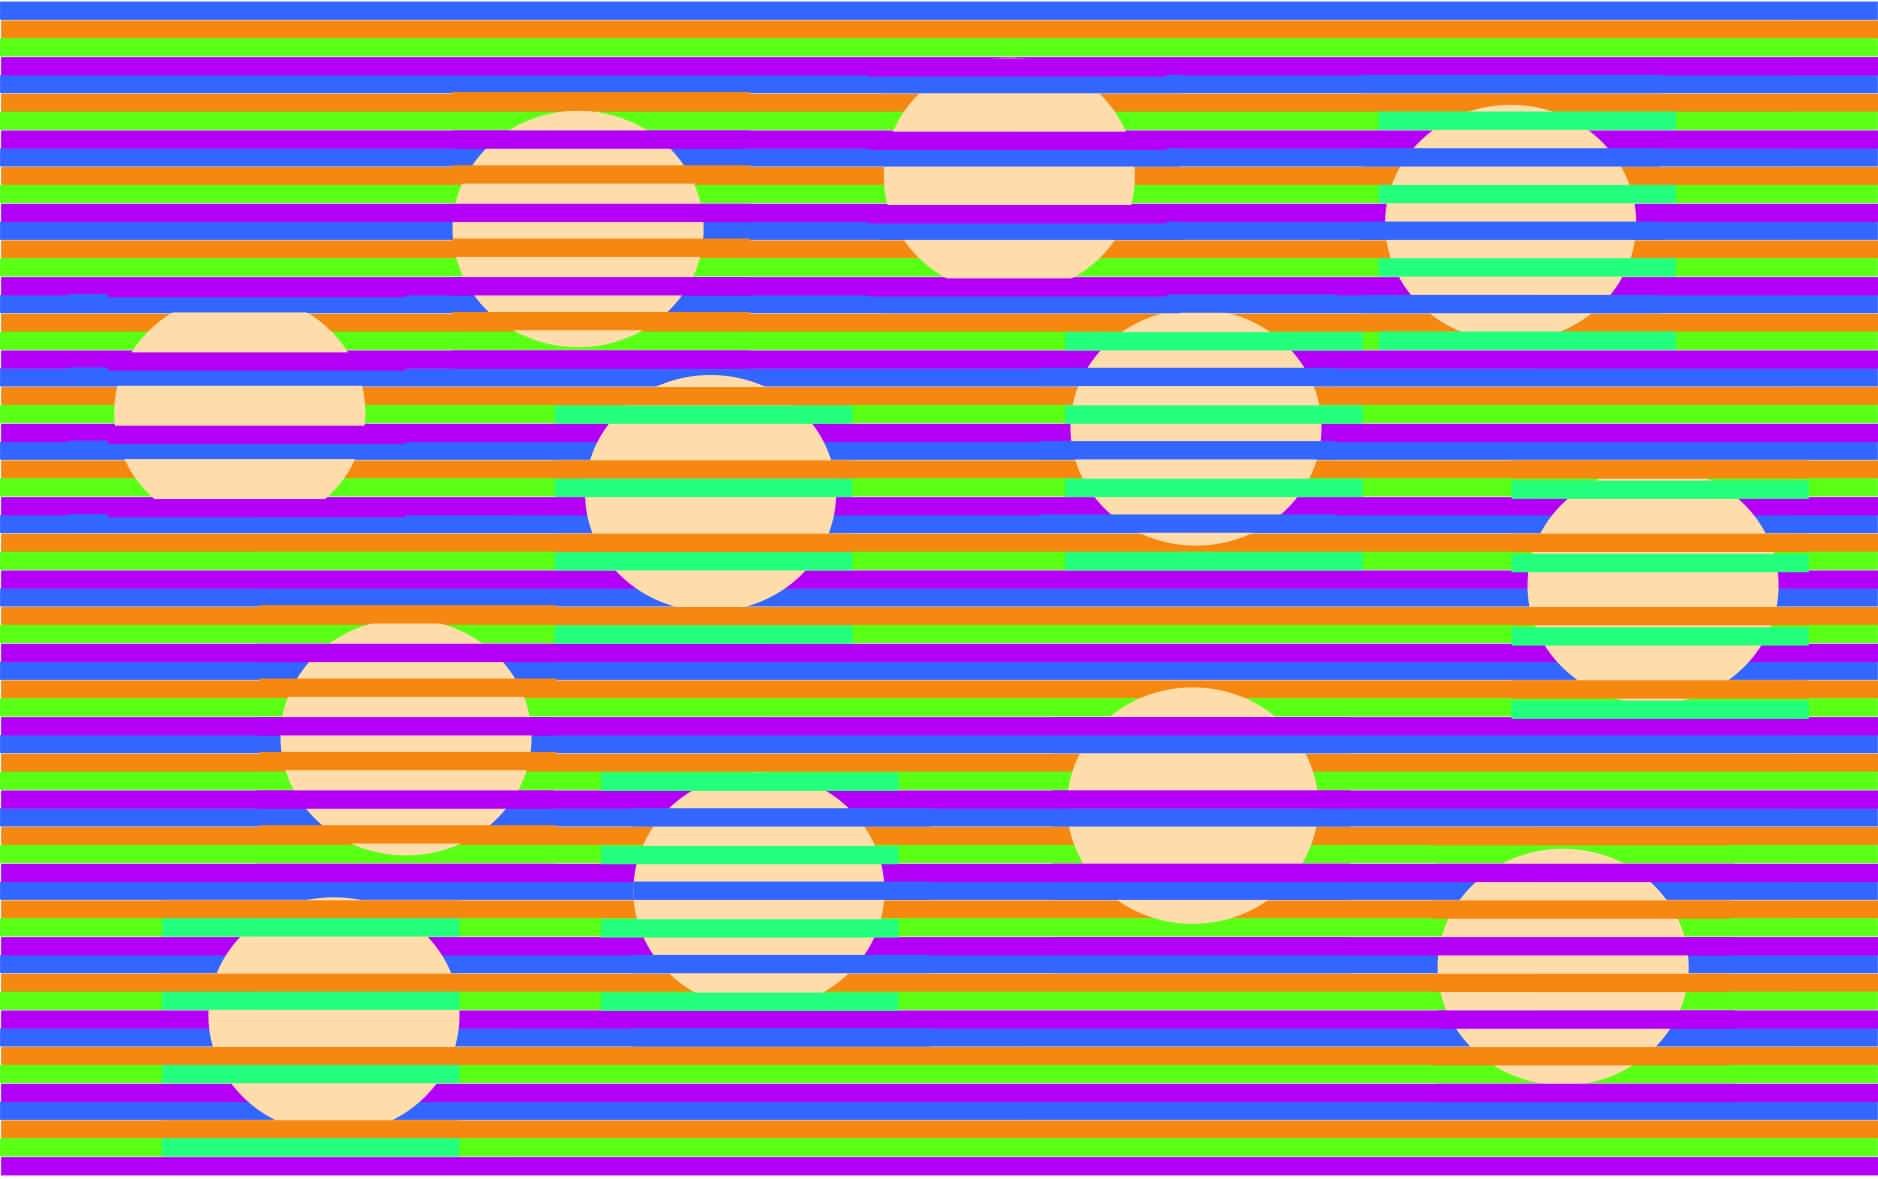 この円すべてがどれも同じ色だと！？色の同化や対比で違った色に見える「ムンカー錯視」の新作